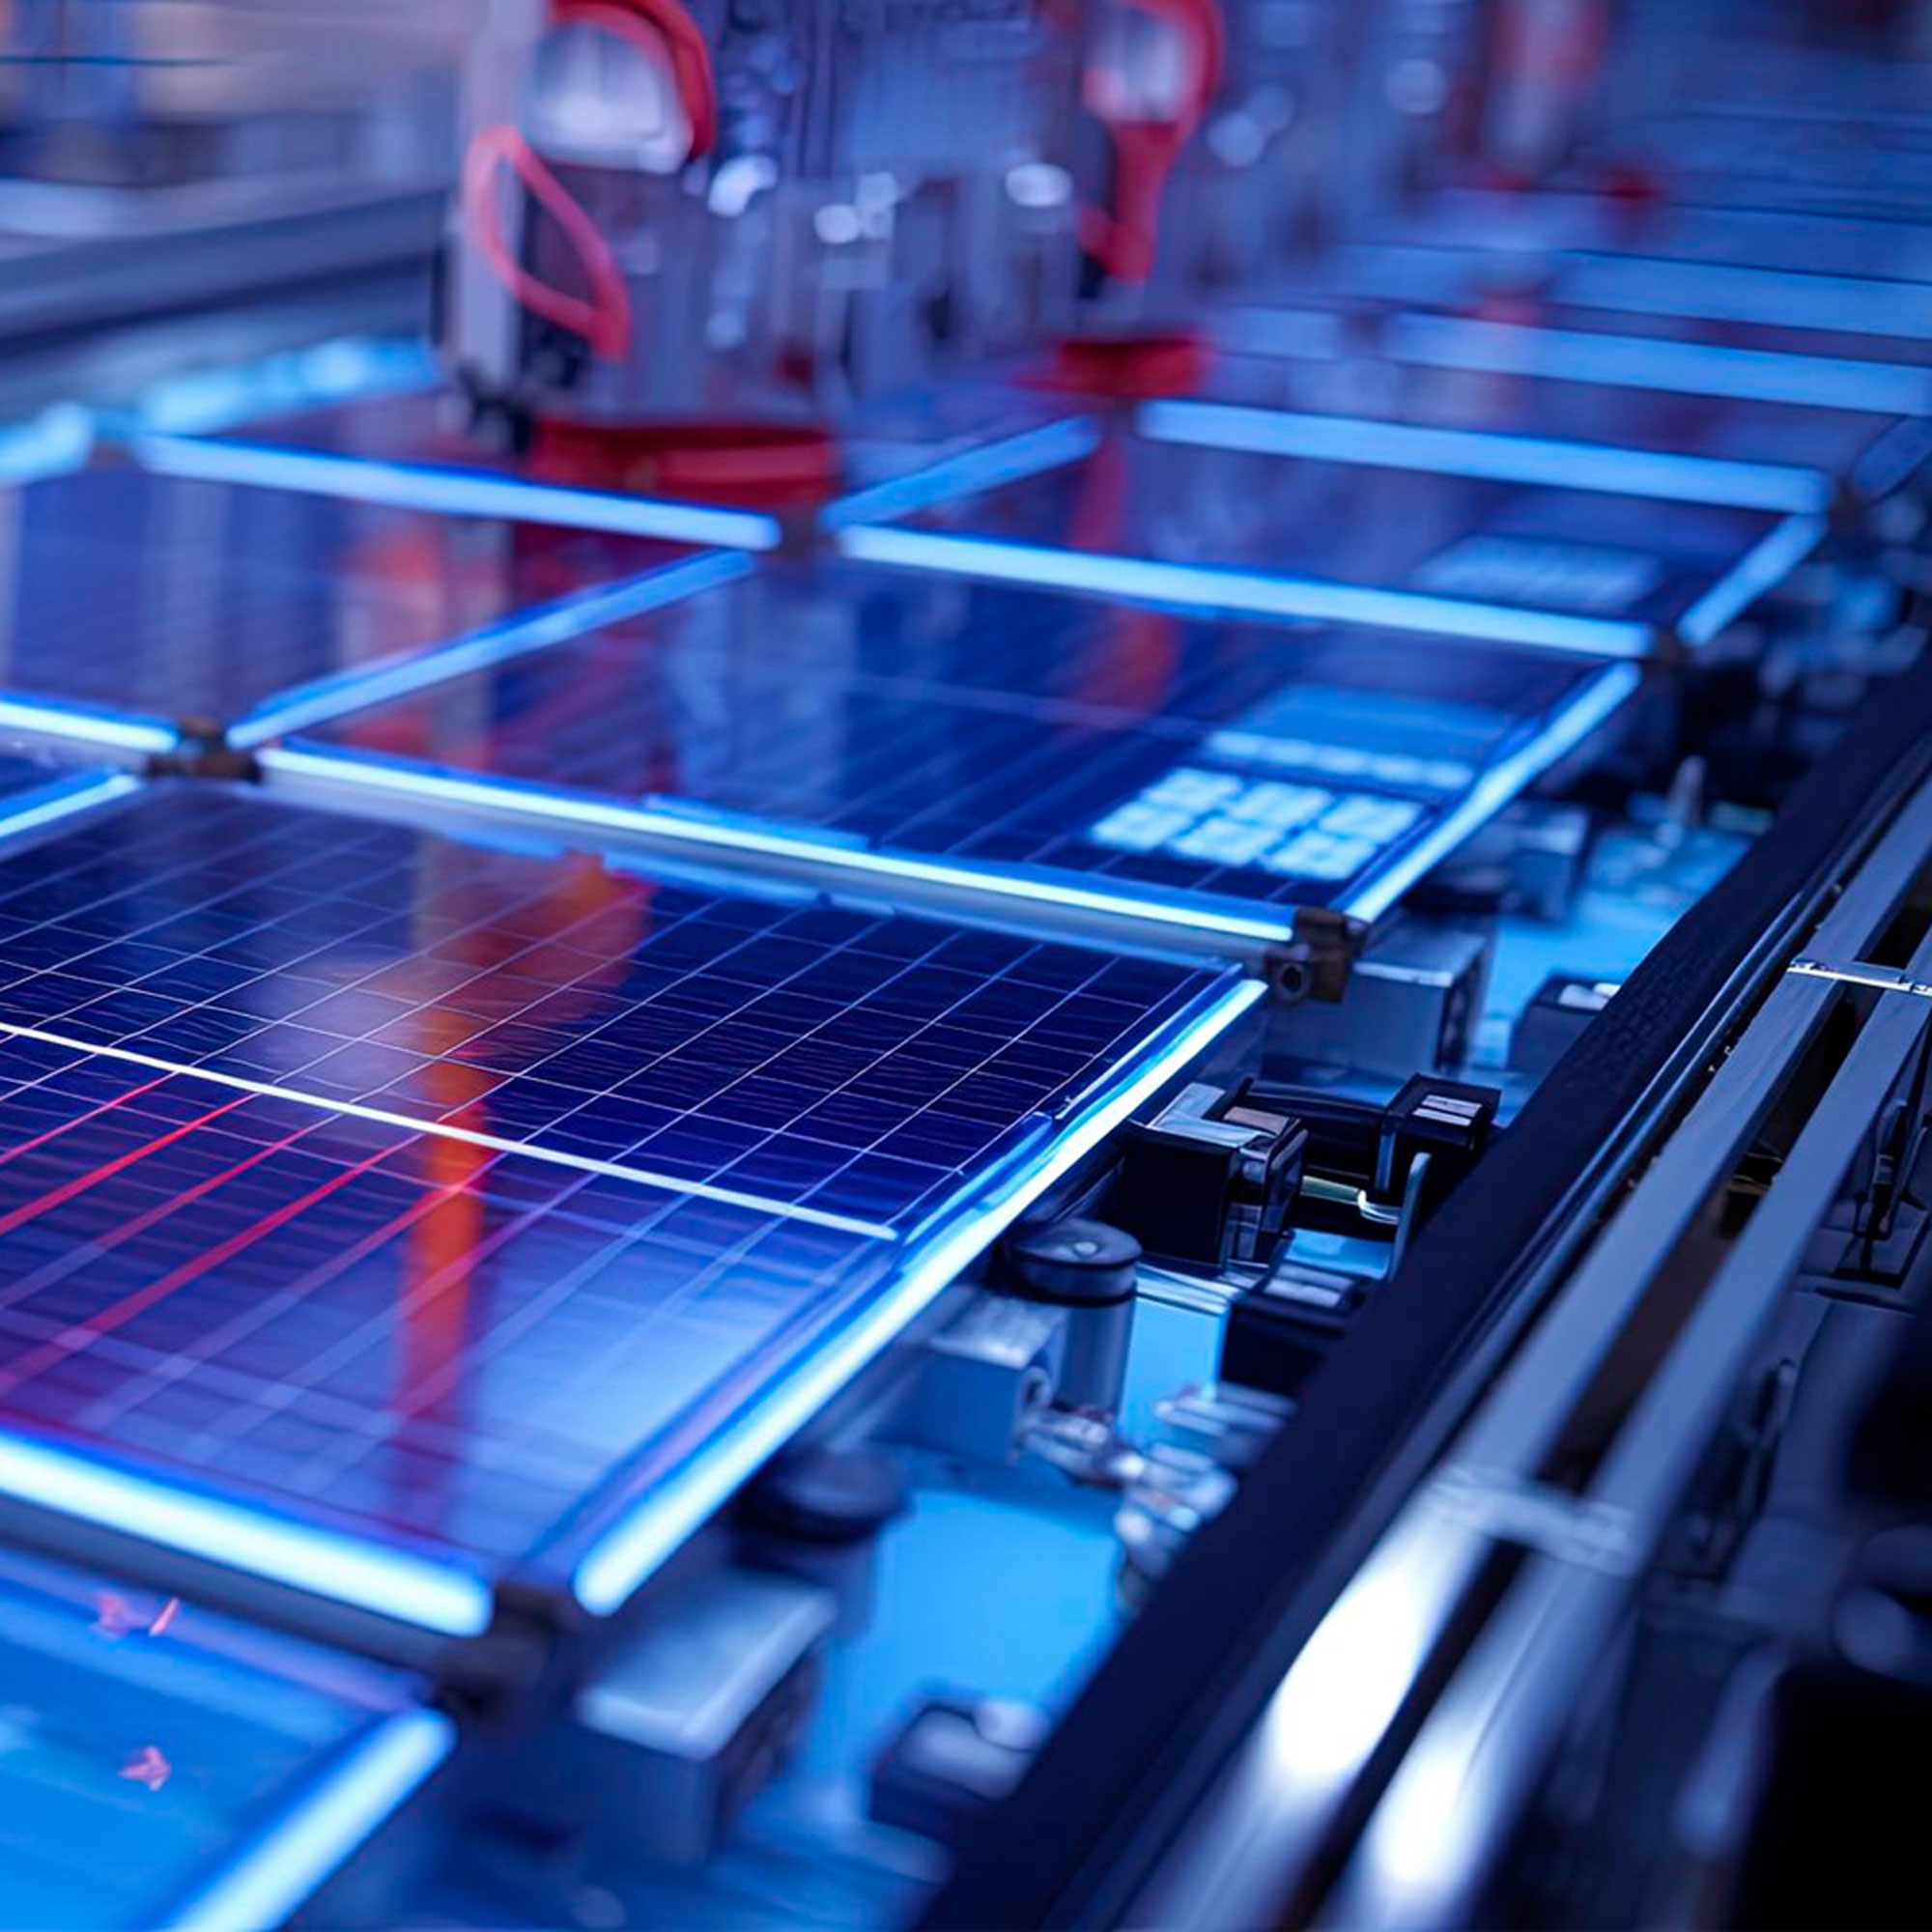 Machines building blue solar panels